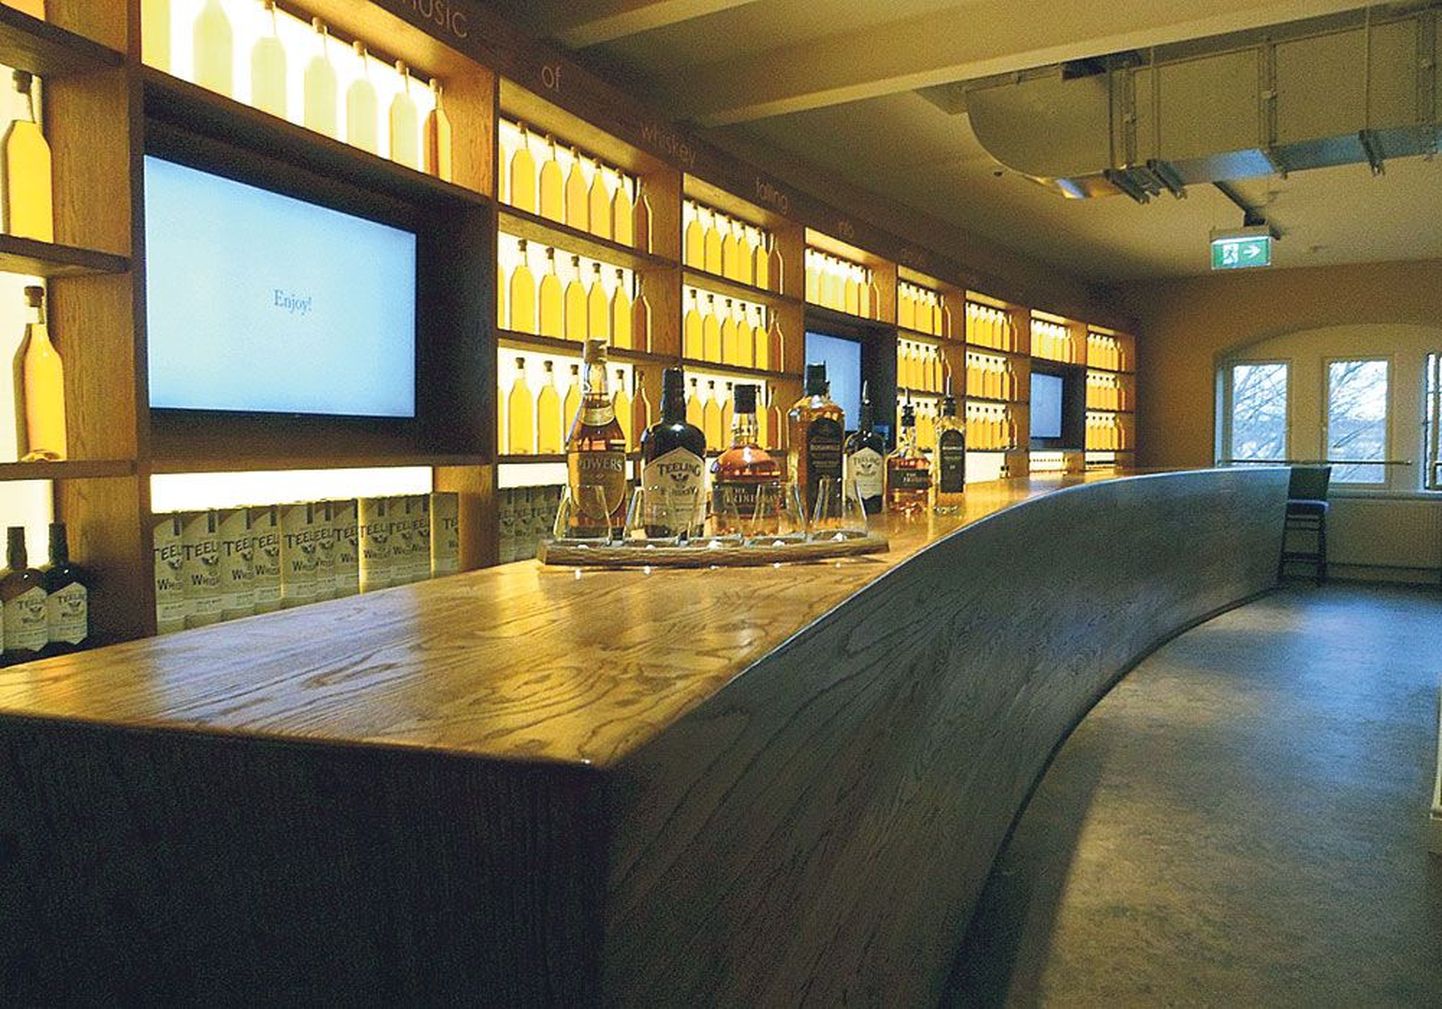 В дегустационном зале музея можно попробовать разные марки виски, а обладатели VIP-билета имеют возможность отведать виски и из особенно ценных старых бутылок.